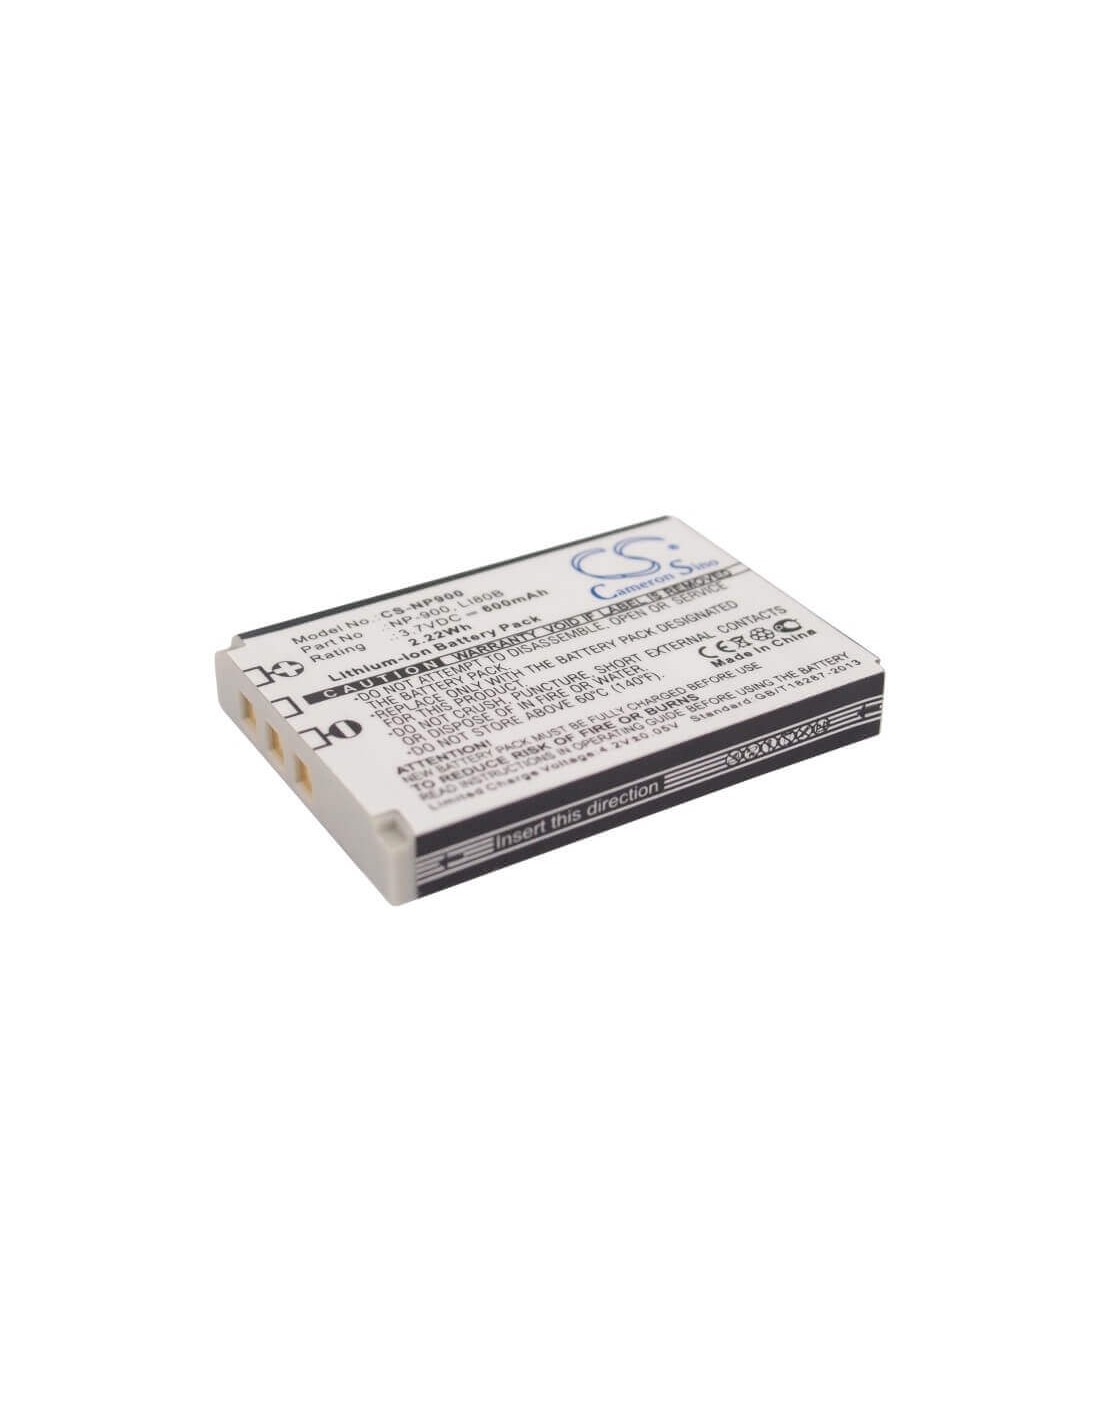 Battery for Premier Dm6331, Prosio, Slim Neo 3.7V, 600mAh - 2.22Wh